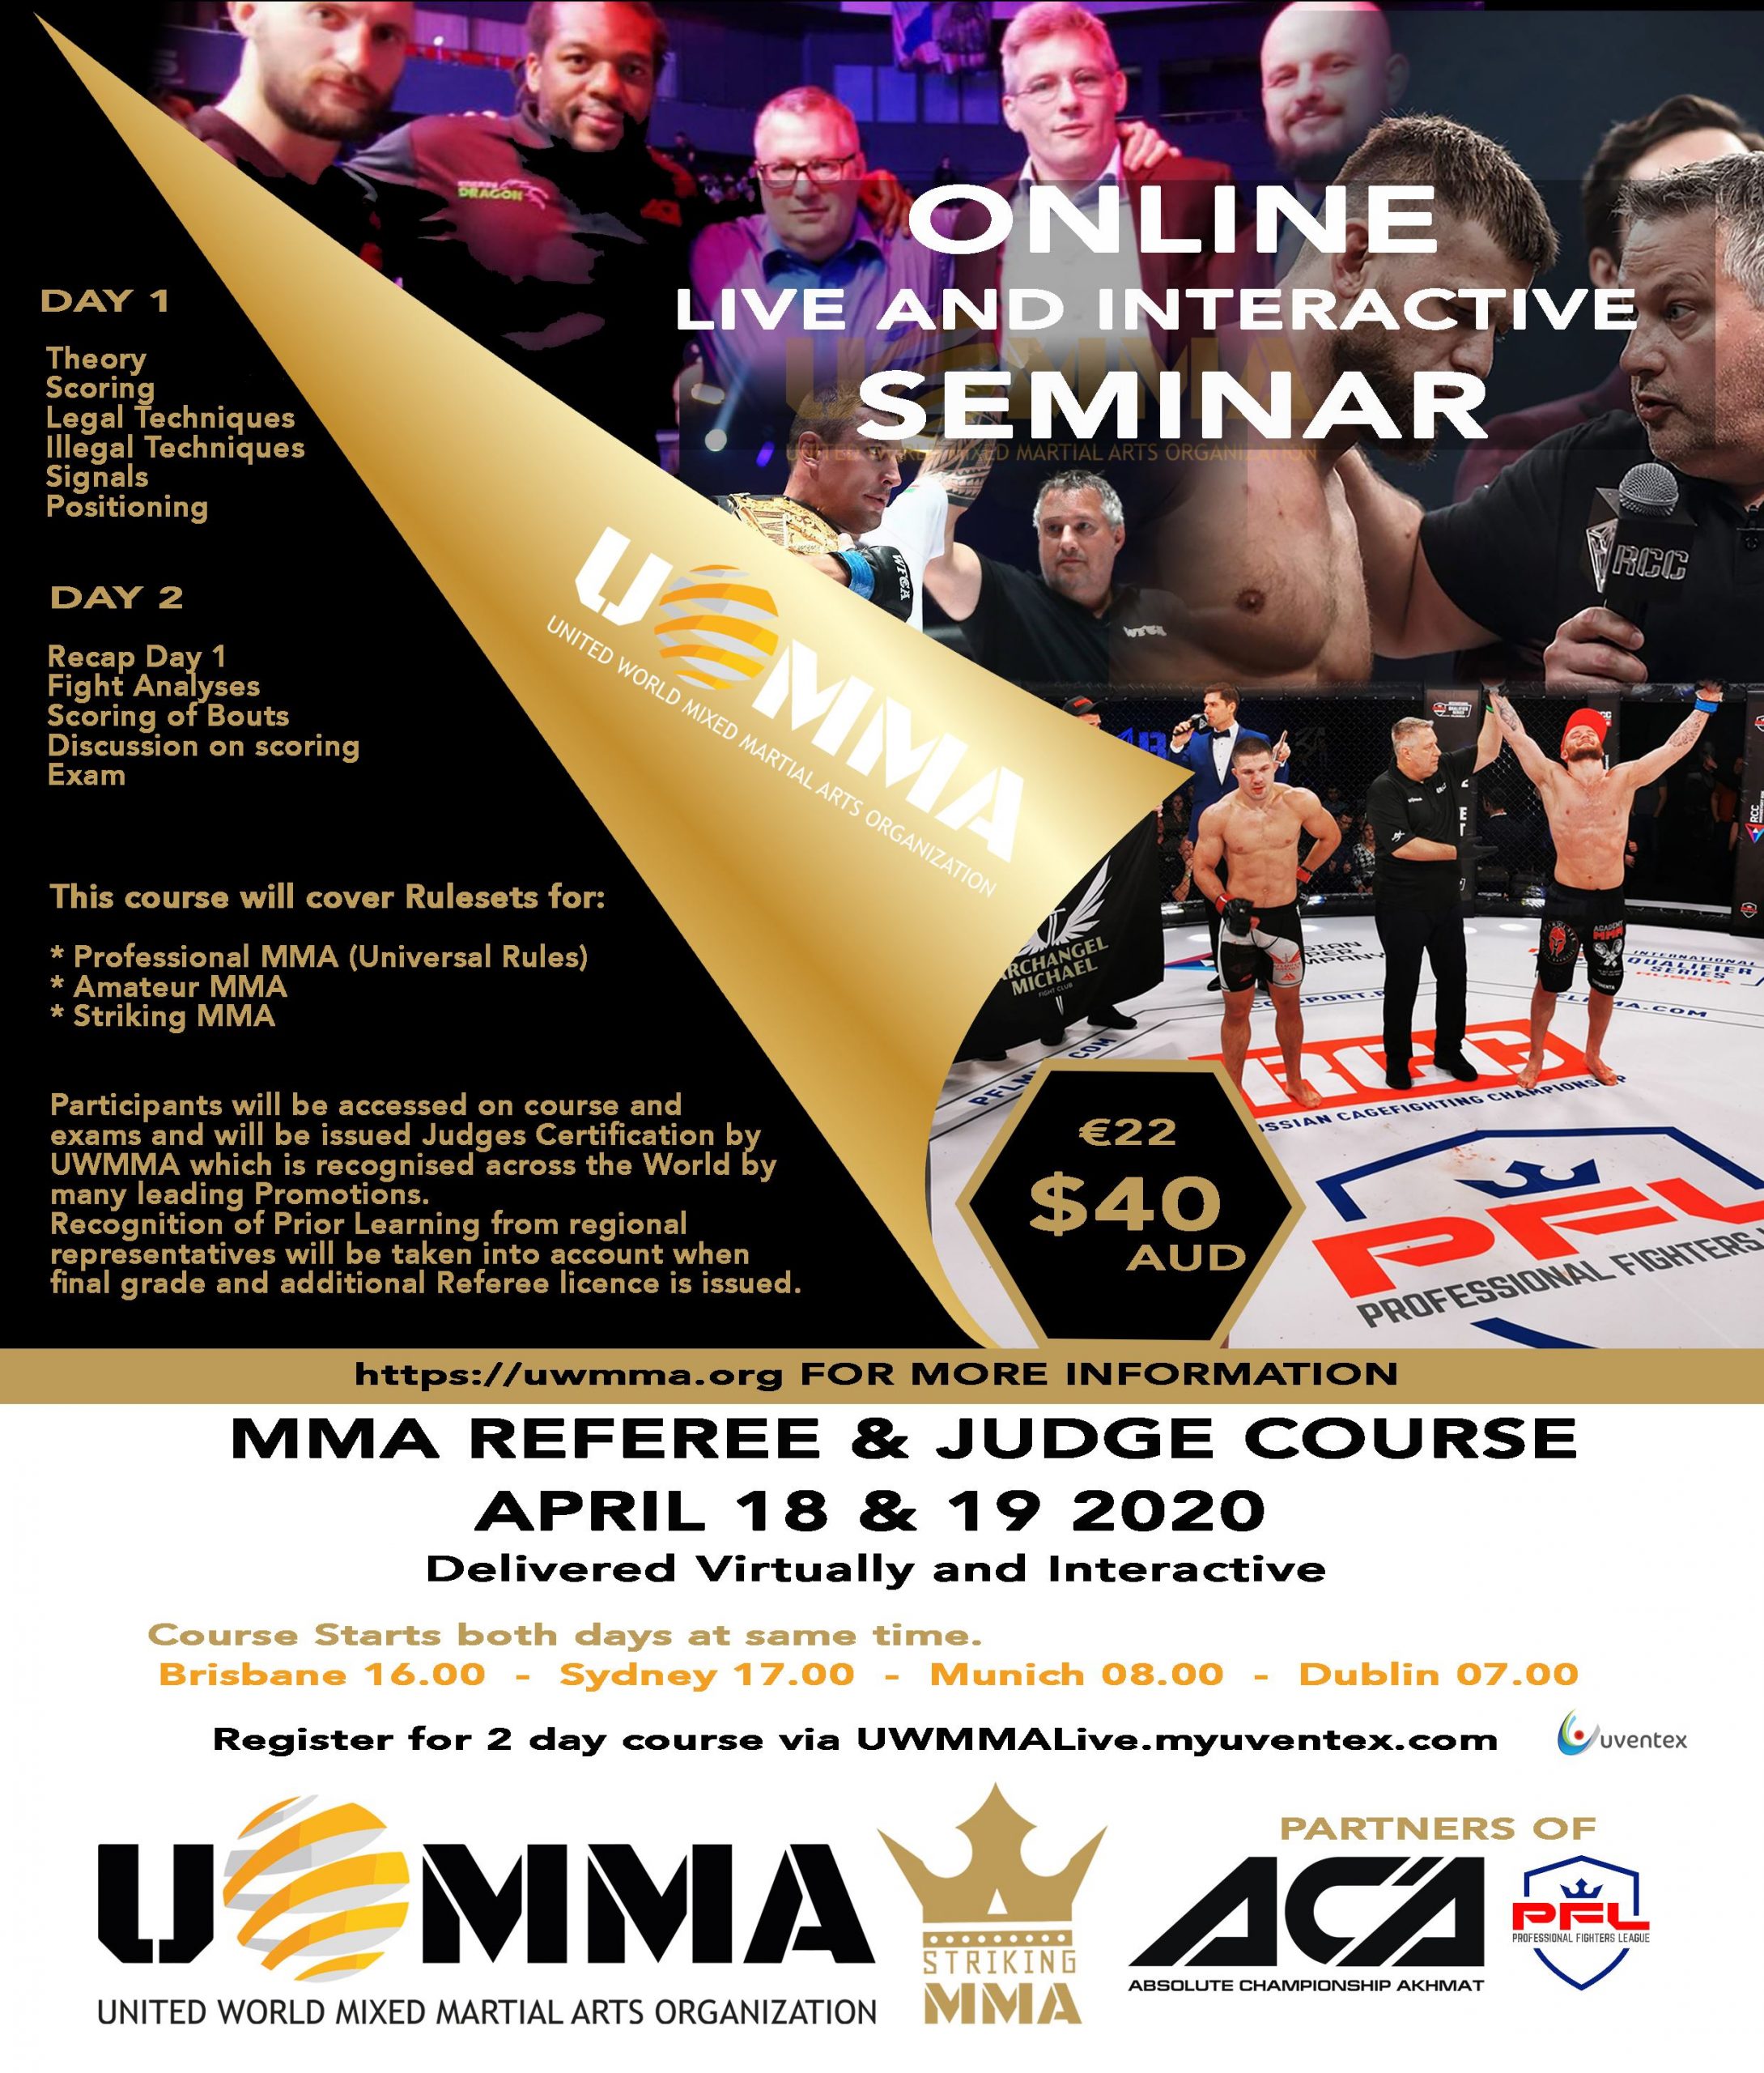 UWMAA officials online training program